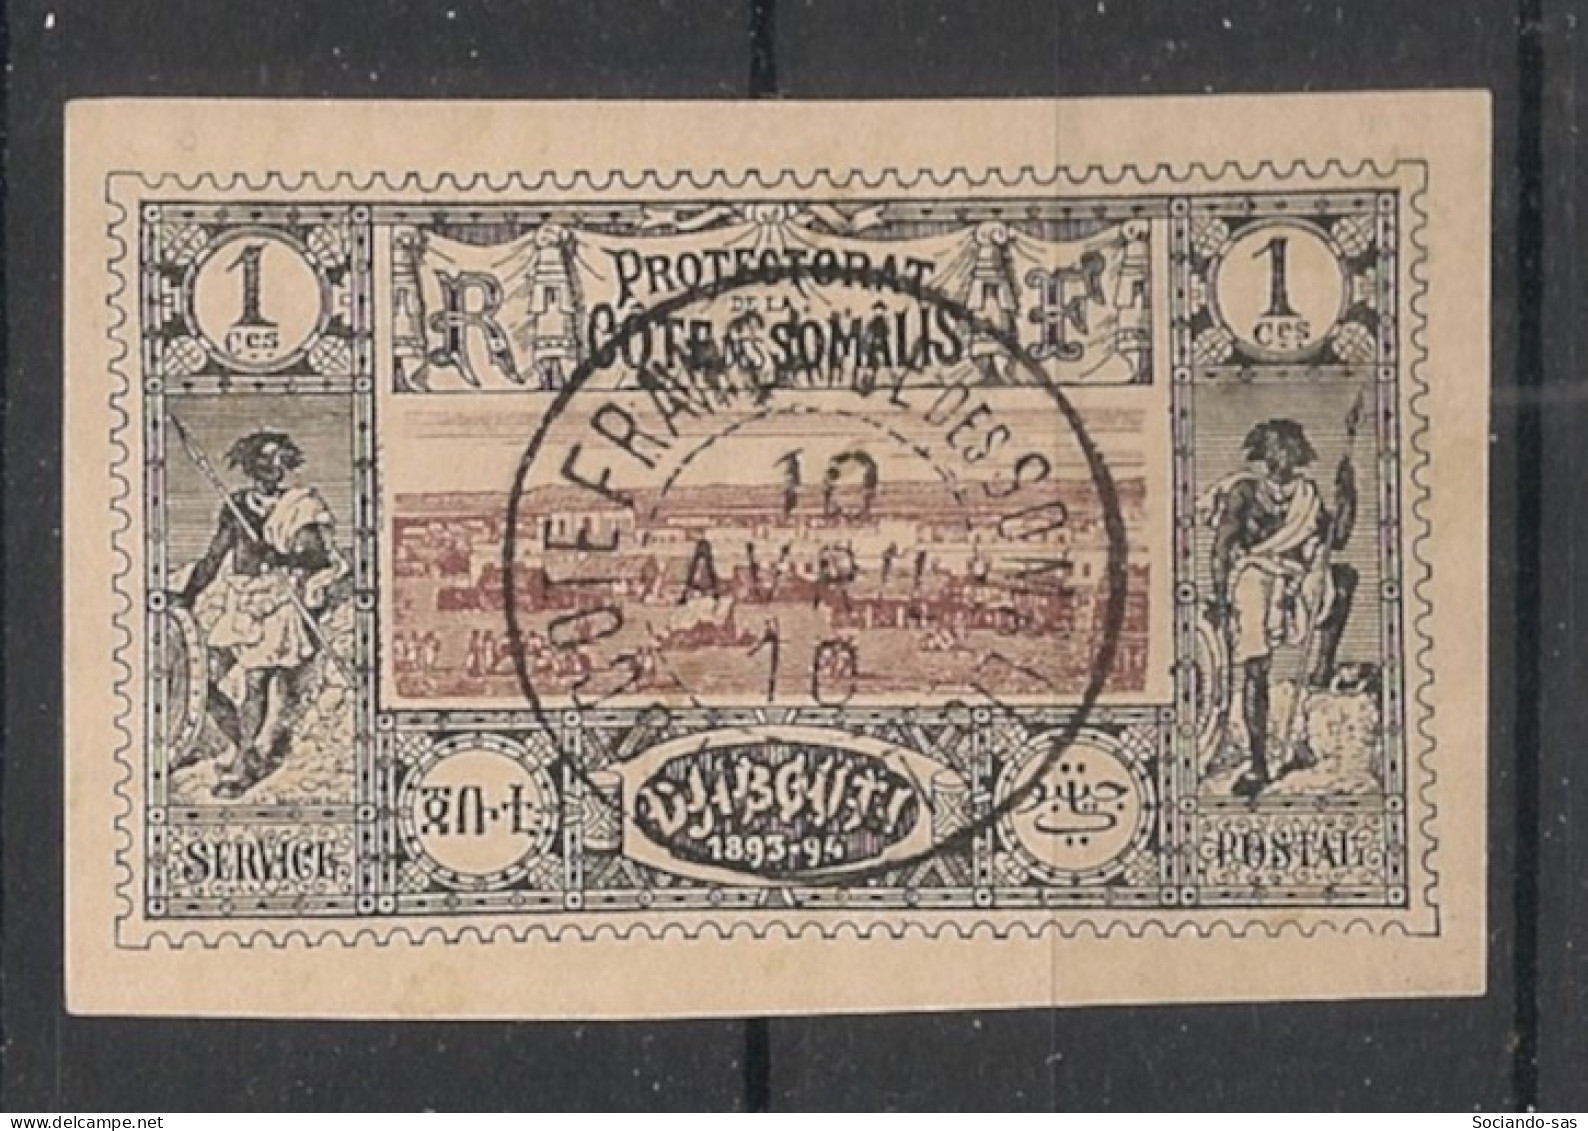 COTE DES SOMALIS - 1894-1900 - N°YT. 6 - Vue De Djibouti 1c Noir - Oblitéré / Used - Oblitérés